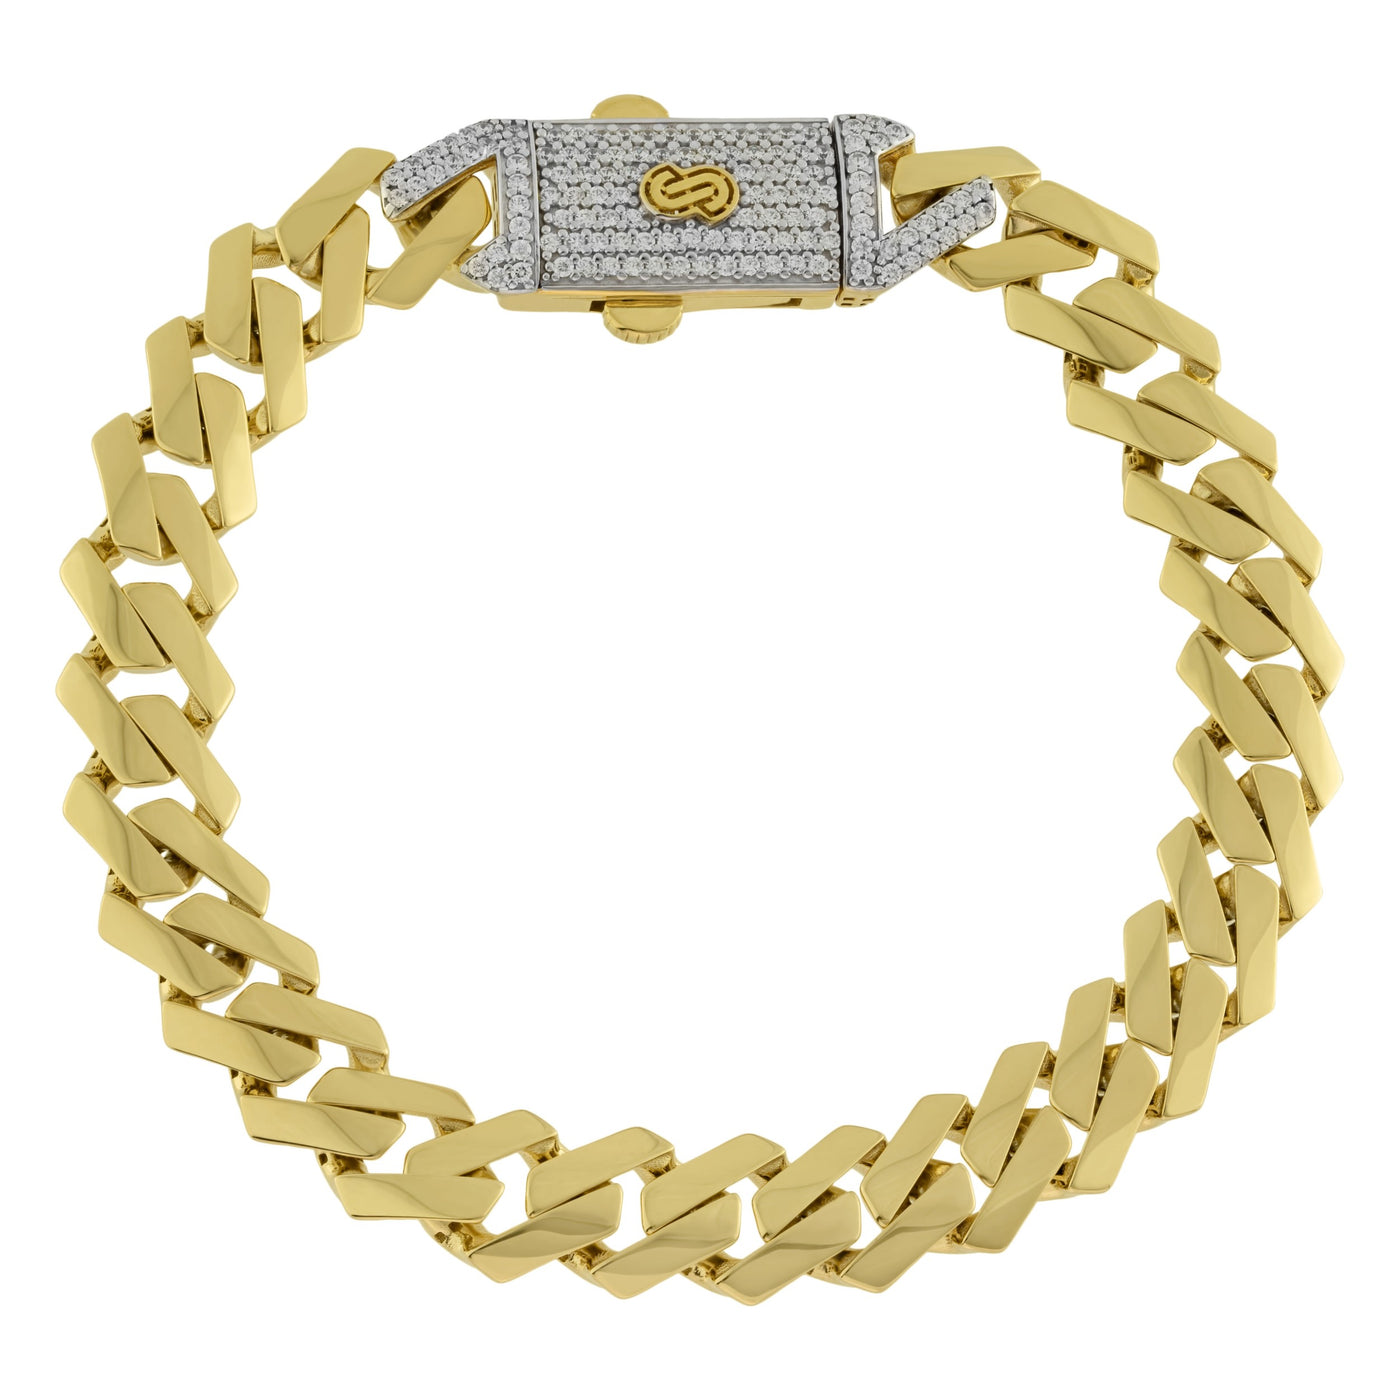 Monaco Chain Miami Cuban Edge Royal Link CZ Lock Bracelet Real 10K Yellow Gold - Hollow